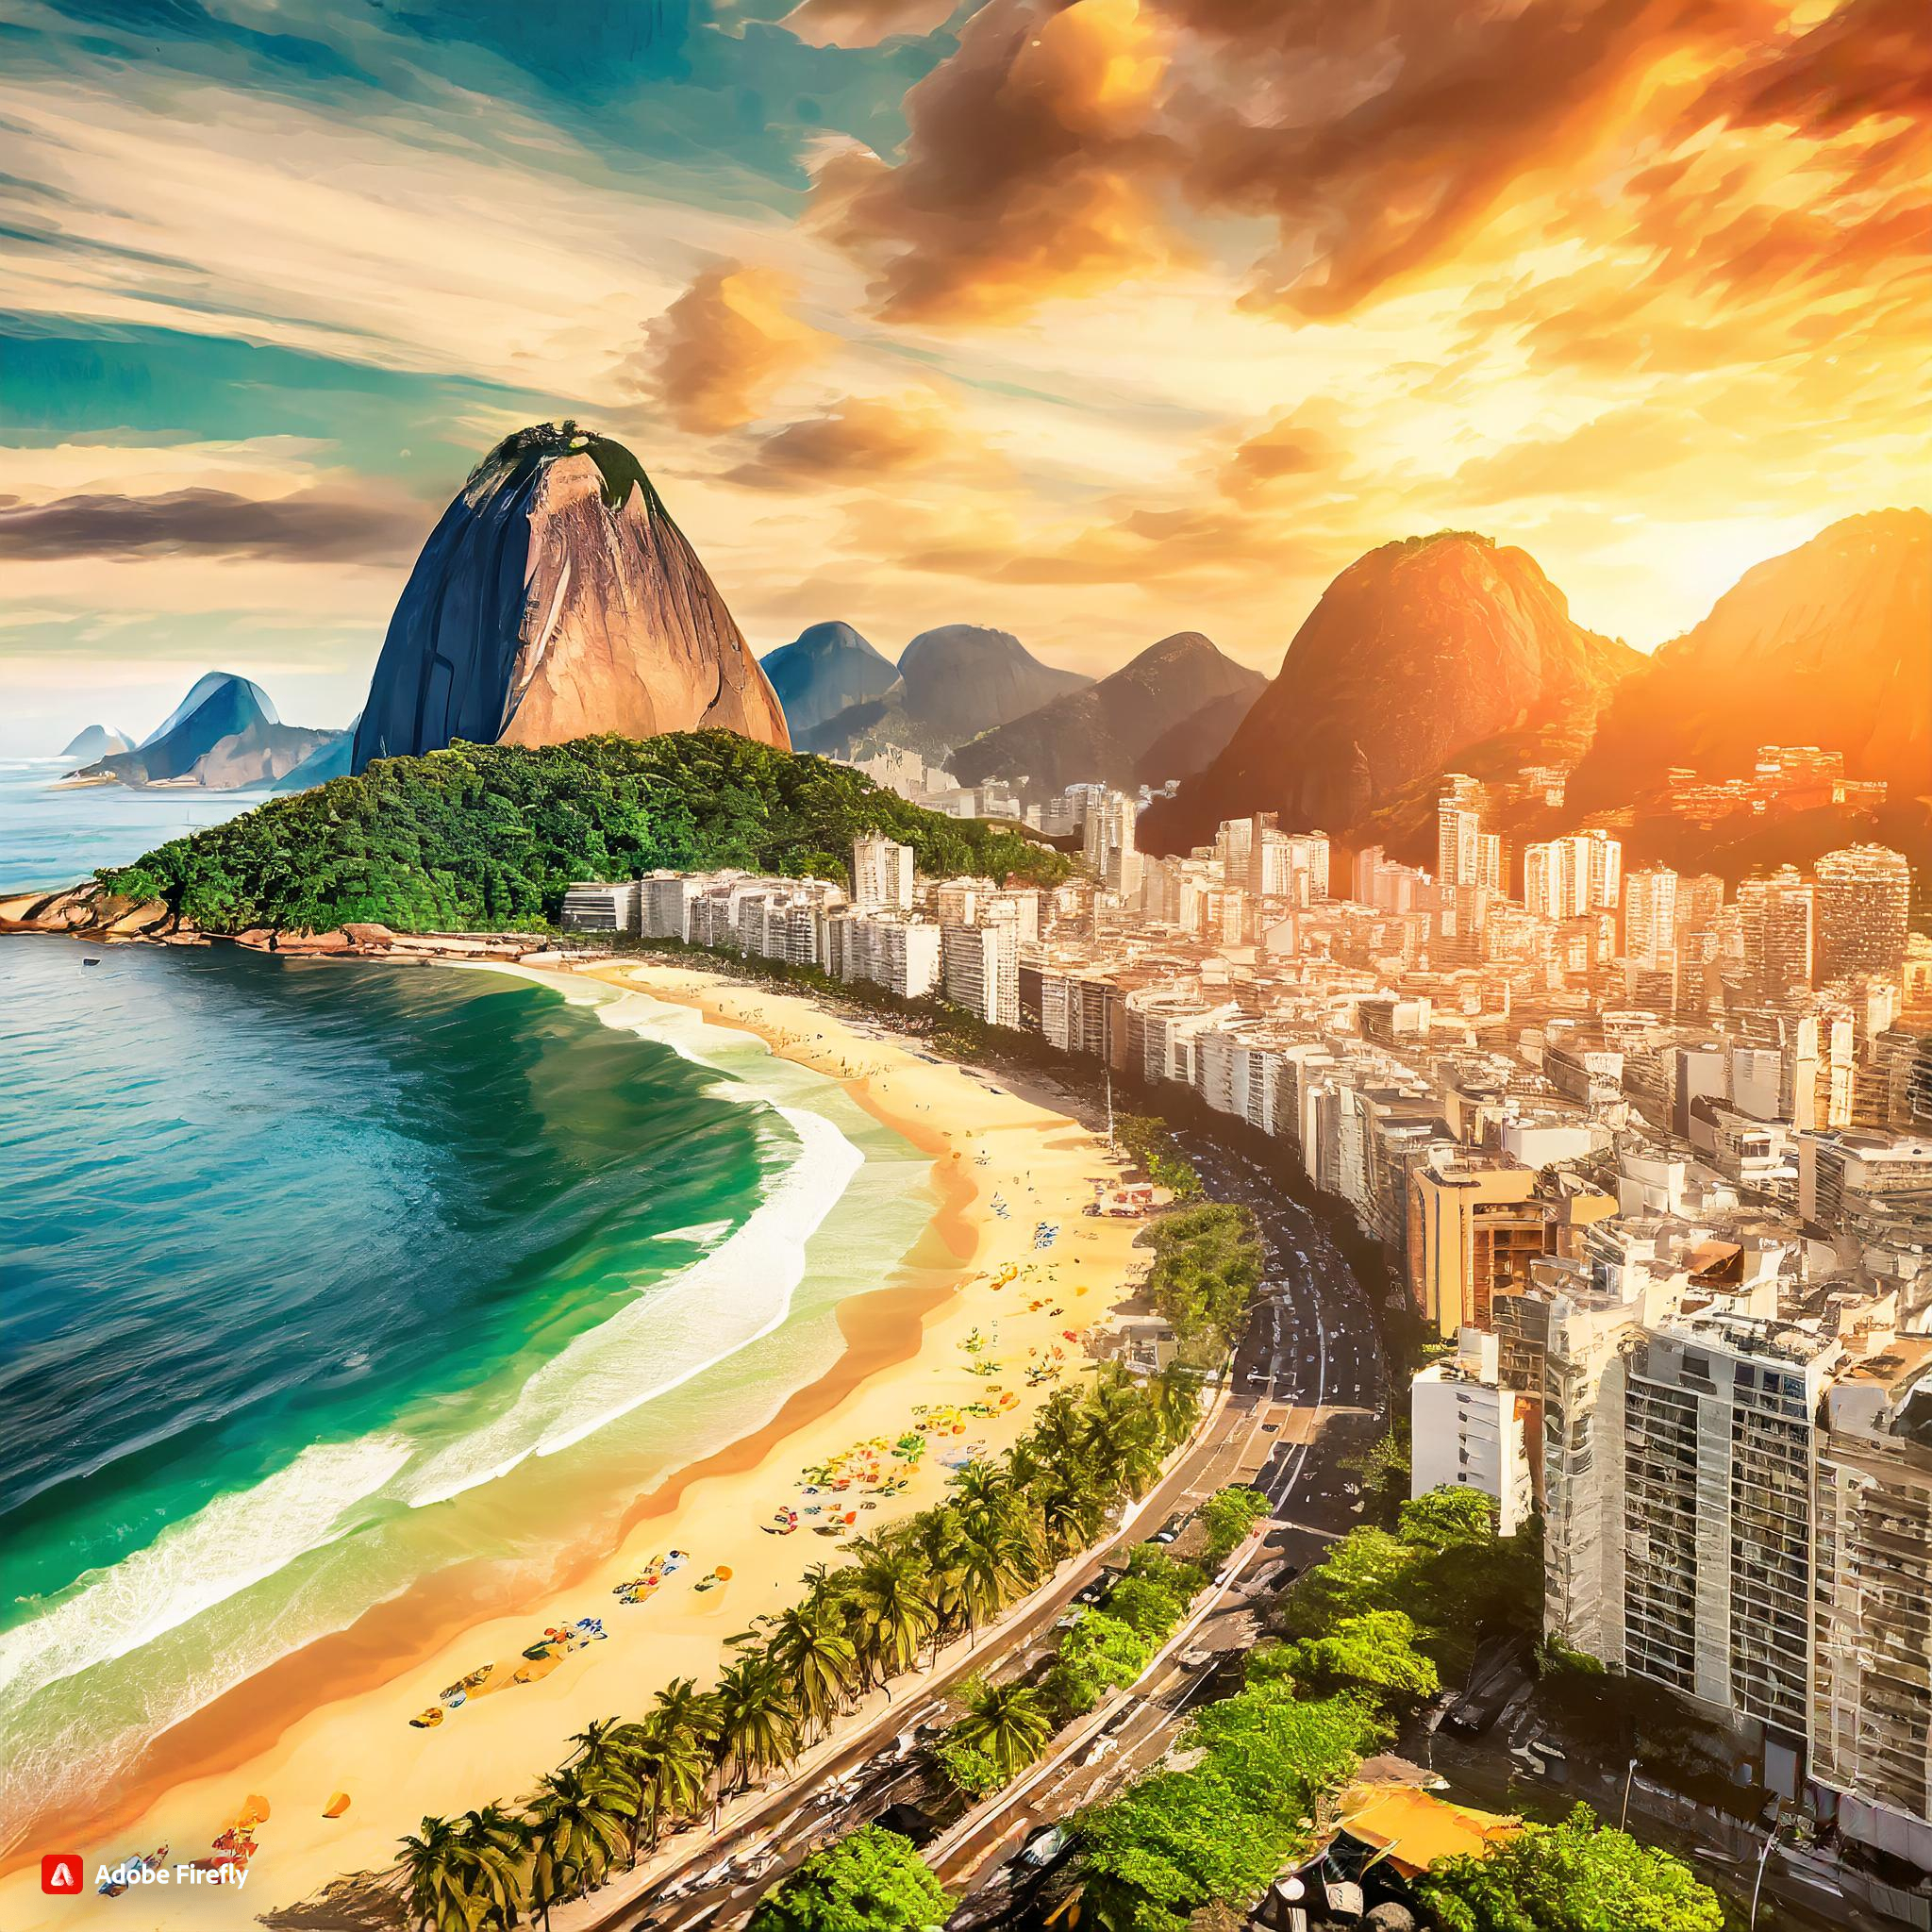  Firefly Rio De Janeiro, Brazil, beachfront, sugarloaf, christ the redeemer, tropical summer.